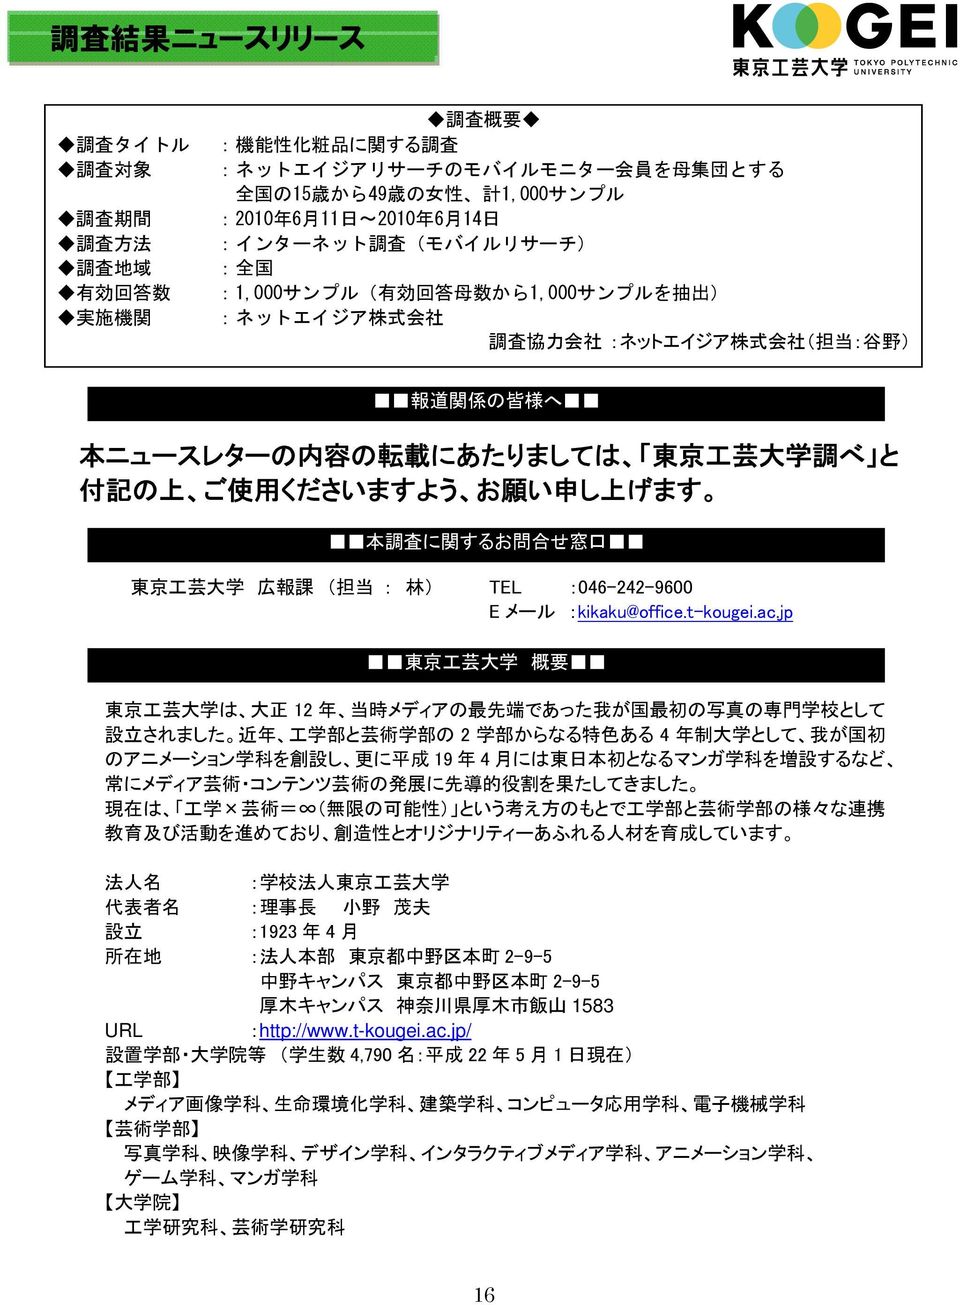 記 の 上 ご 使 用 くださいますよう お 願 い 申 し 上 げます 本 調 査 に 関 するお 問 合 せ 窓 口 東 京 工 芸 大 学 広 報 課 ( 担 当 : 林 ) TEL :046-242-9600 Eメール :kikaku@office.t-kougei.ac.